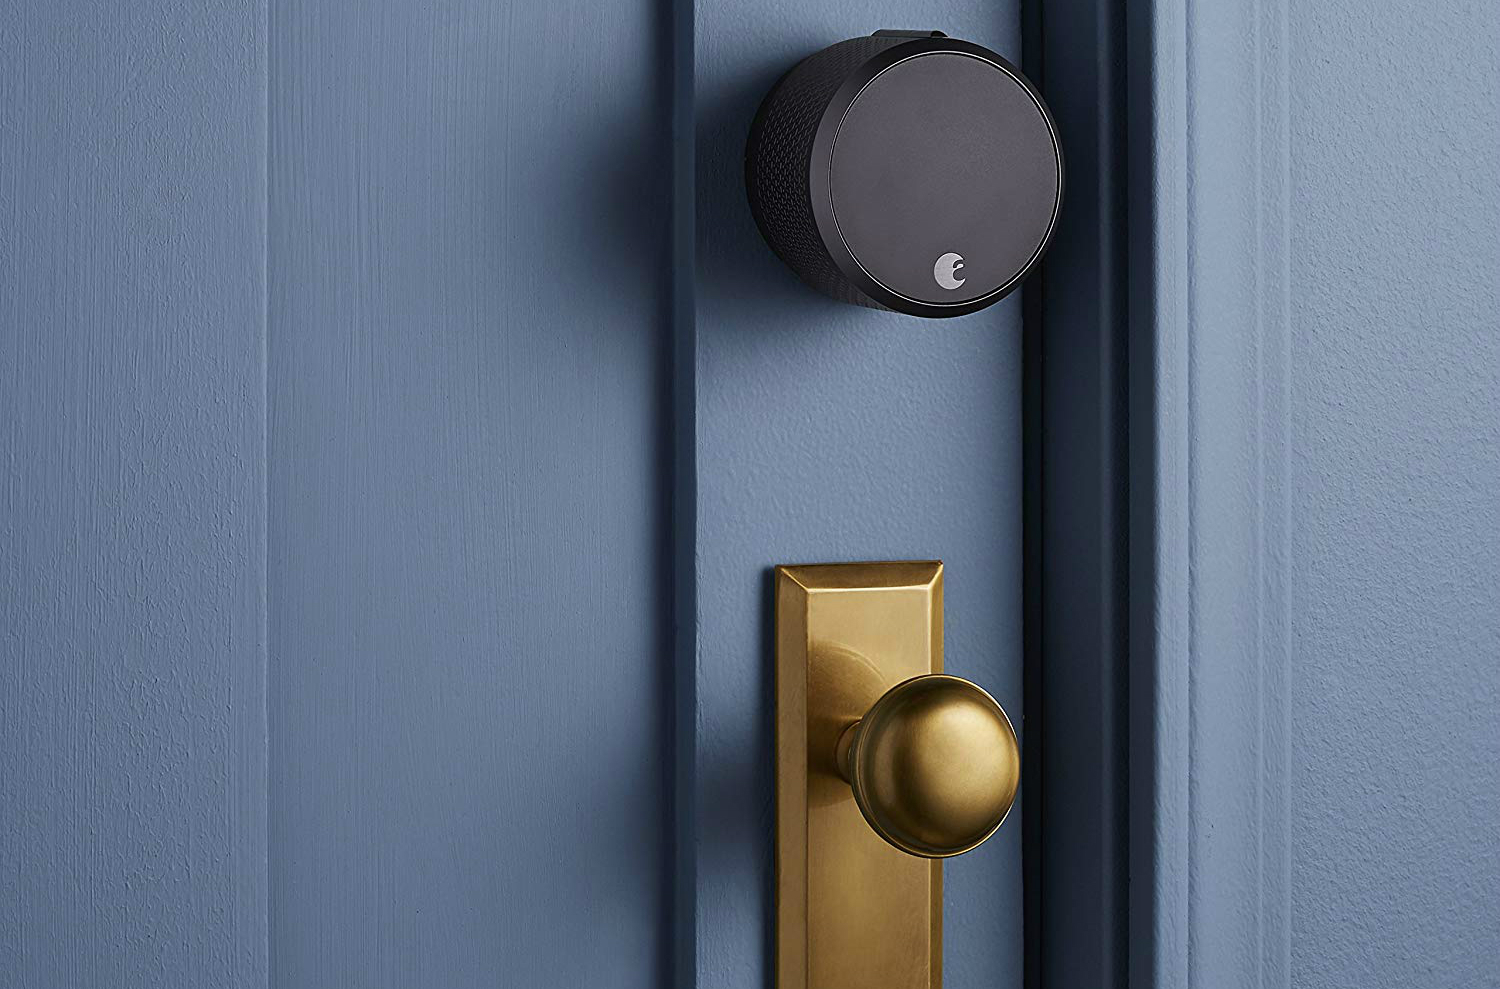 The August Smart Lock Pro on a door.